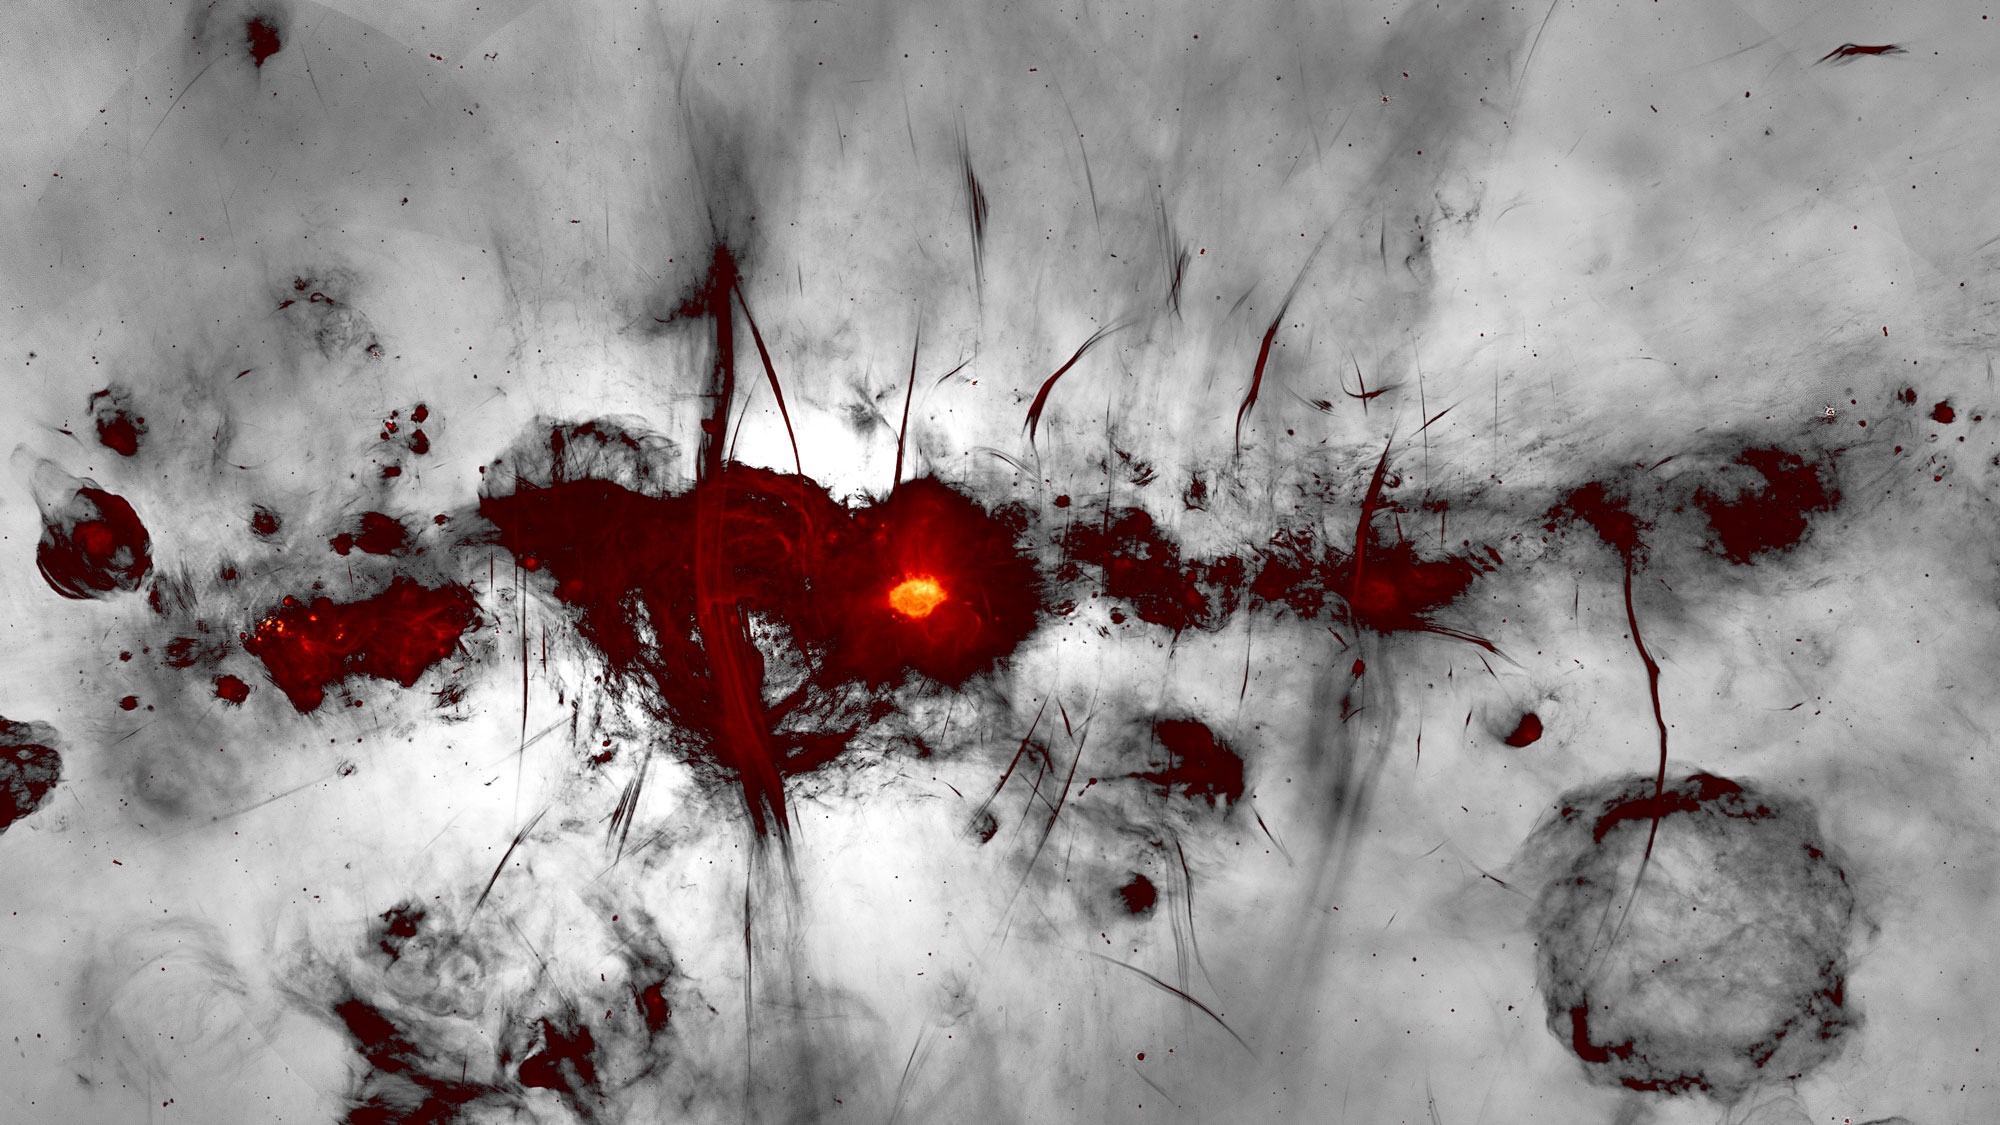 Científicos toman fotografías del agujero negro en el centro de la Vía Láctea